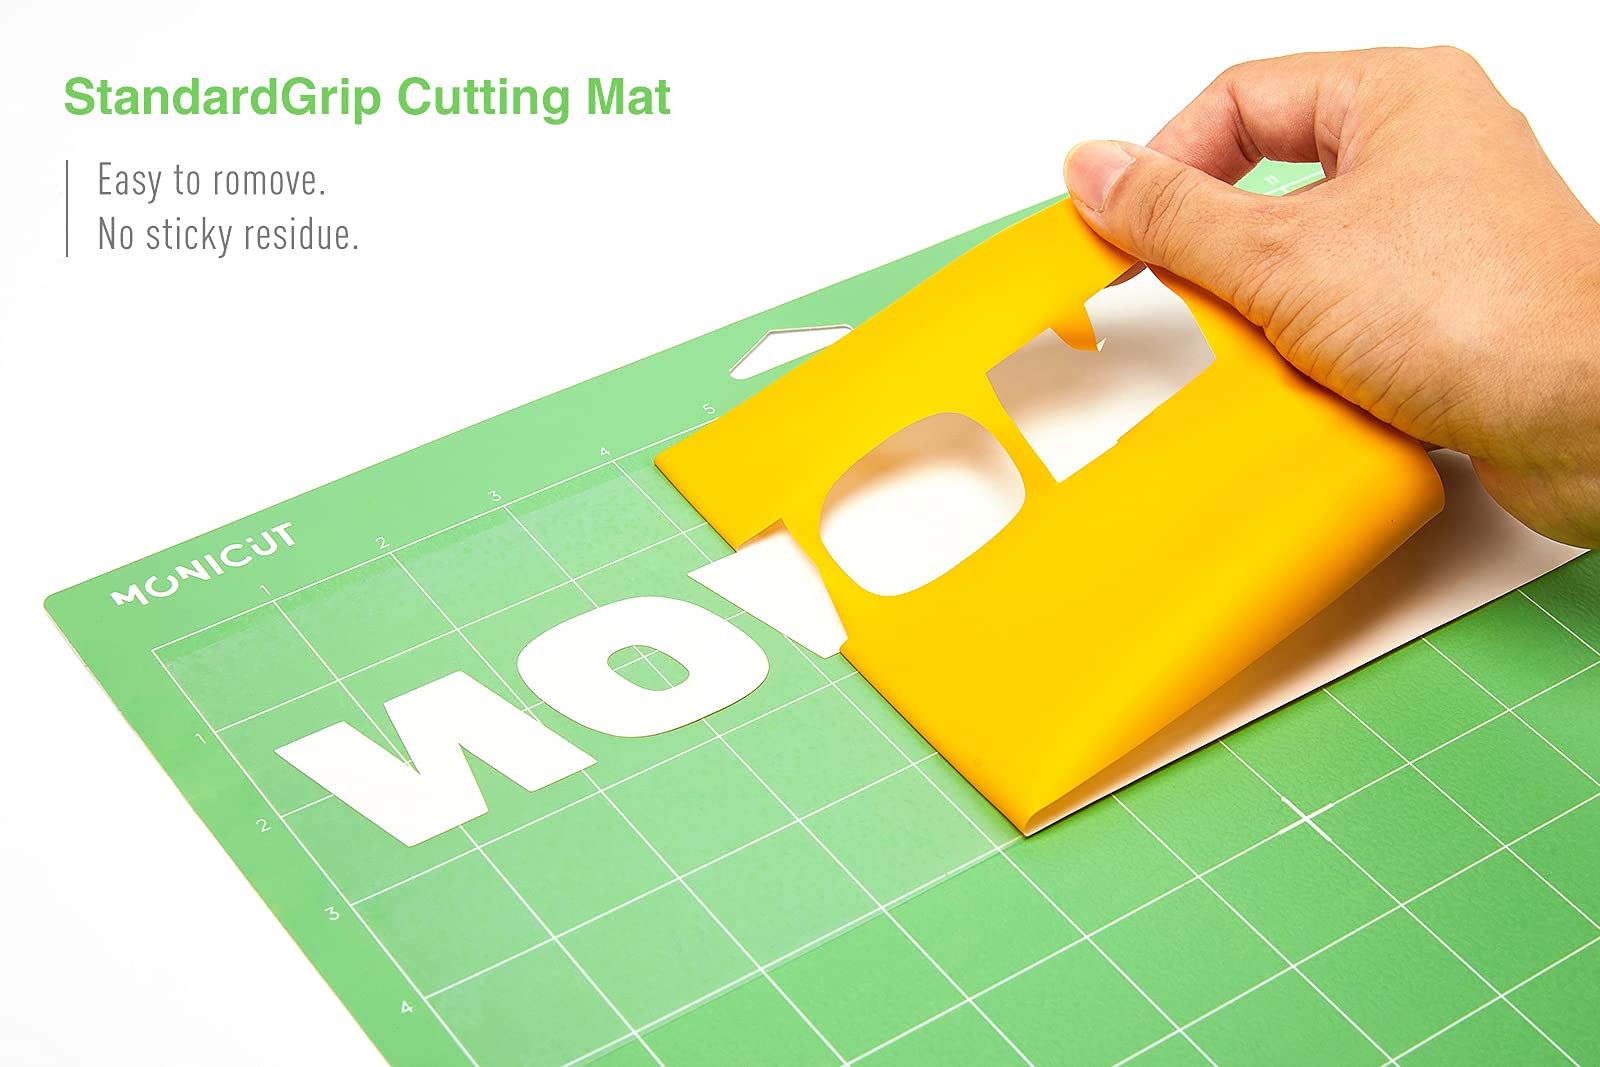 Cricut LightGrip Cutting Mats 12in x 12in, Reusable Cutting Mats